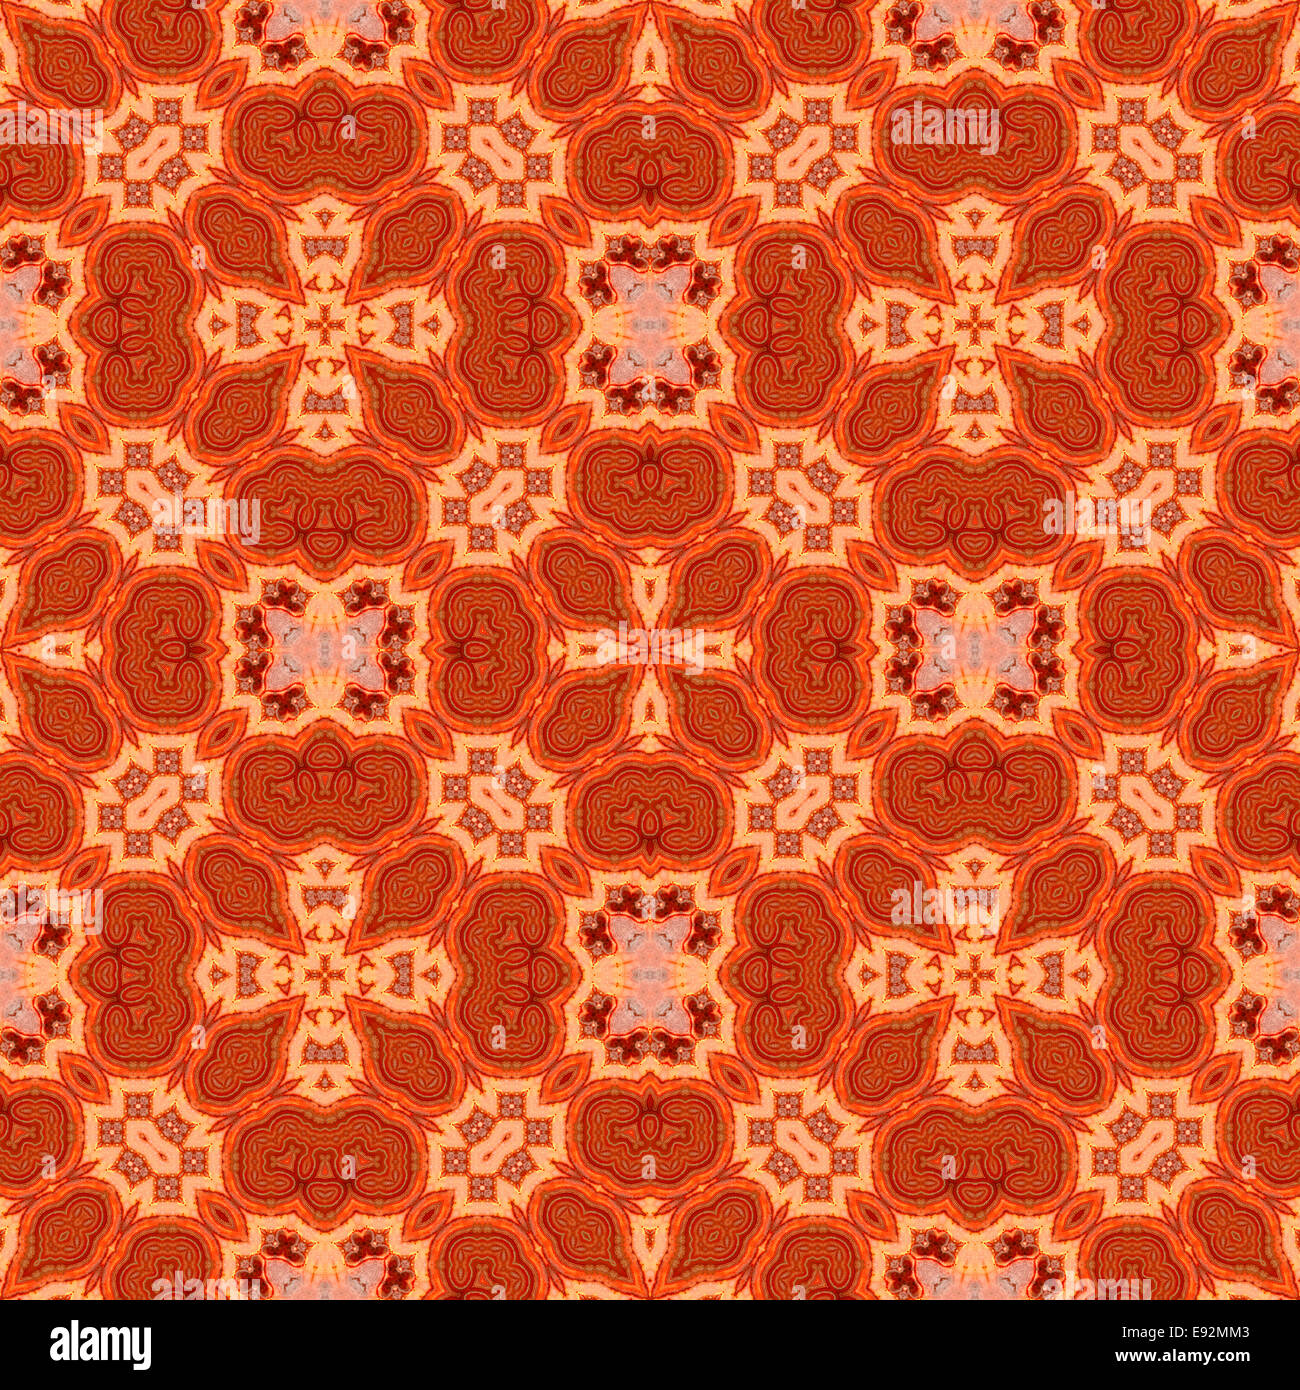 Modèle répétées faites à partir d'une image du minéral agate rouge translucide Banque D'Images